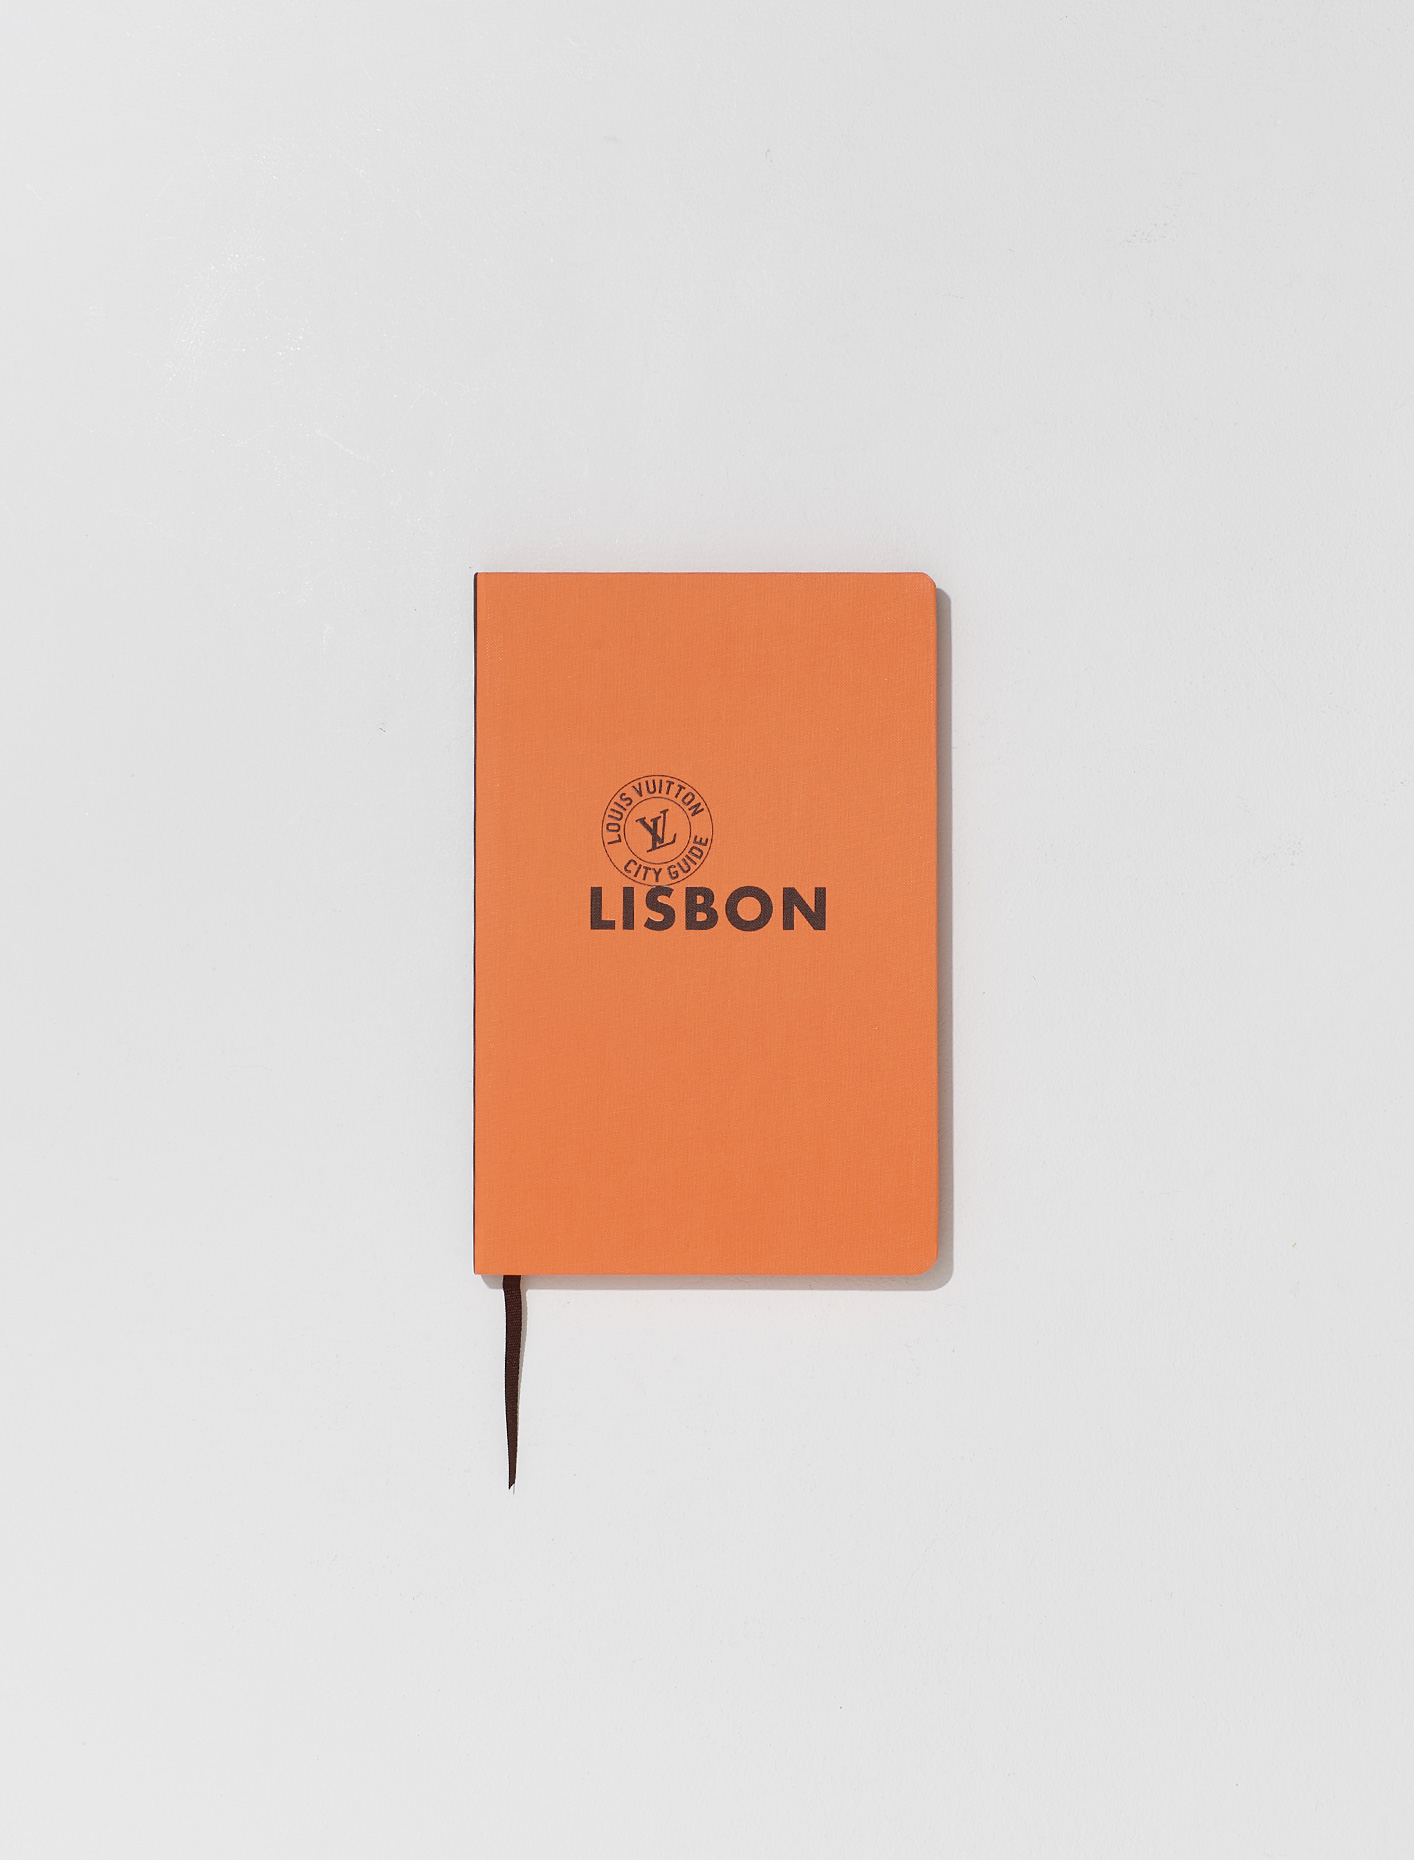 Louis Vuitton " LISBON " Portugal City Guide Book